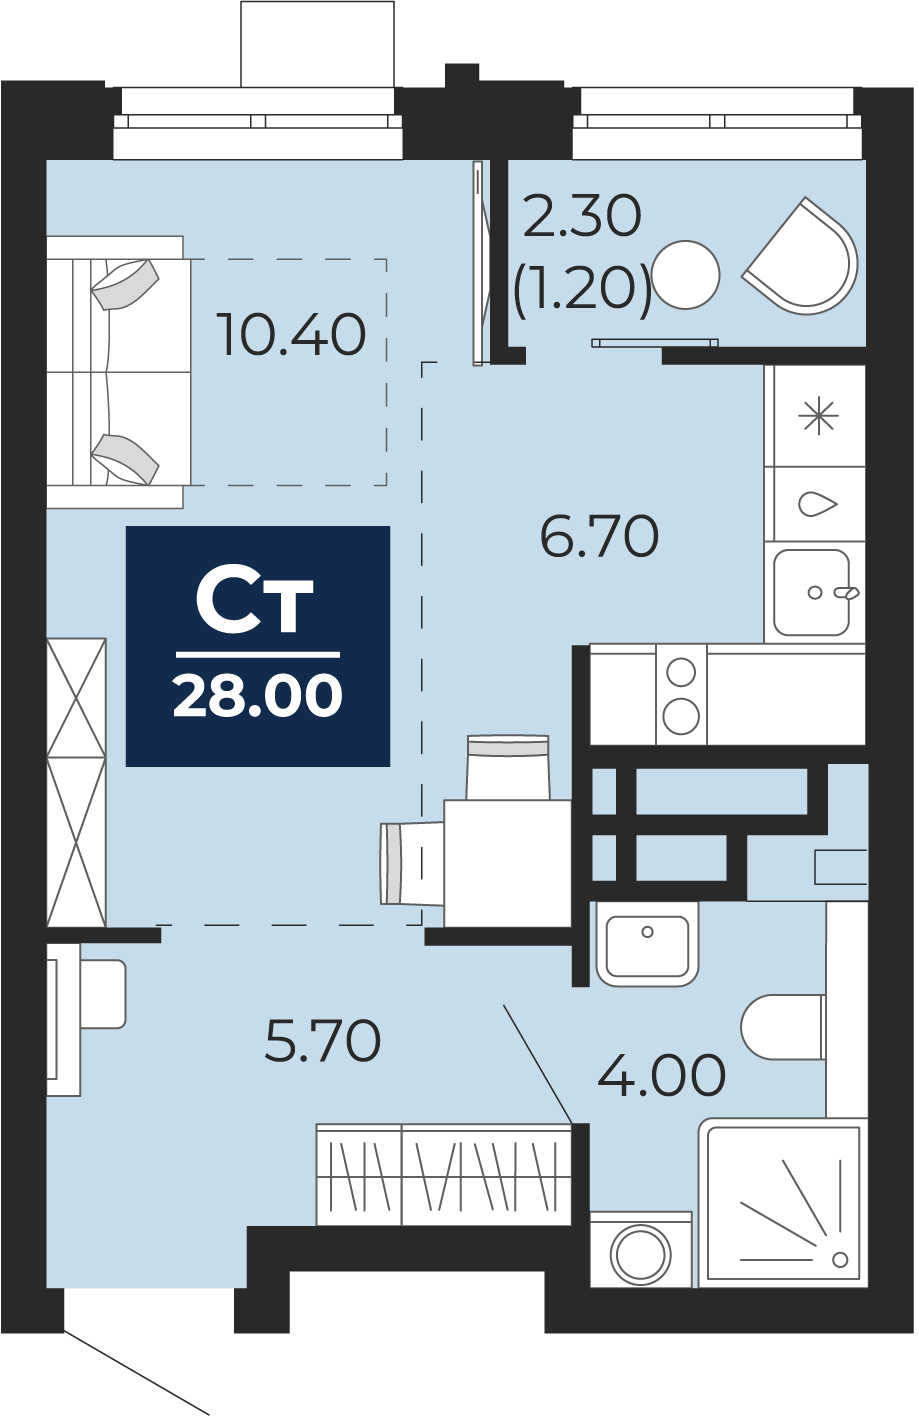 Квартира № 219, Студия, 28 кв. м, 19 этаж